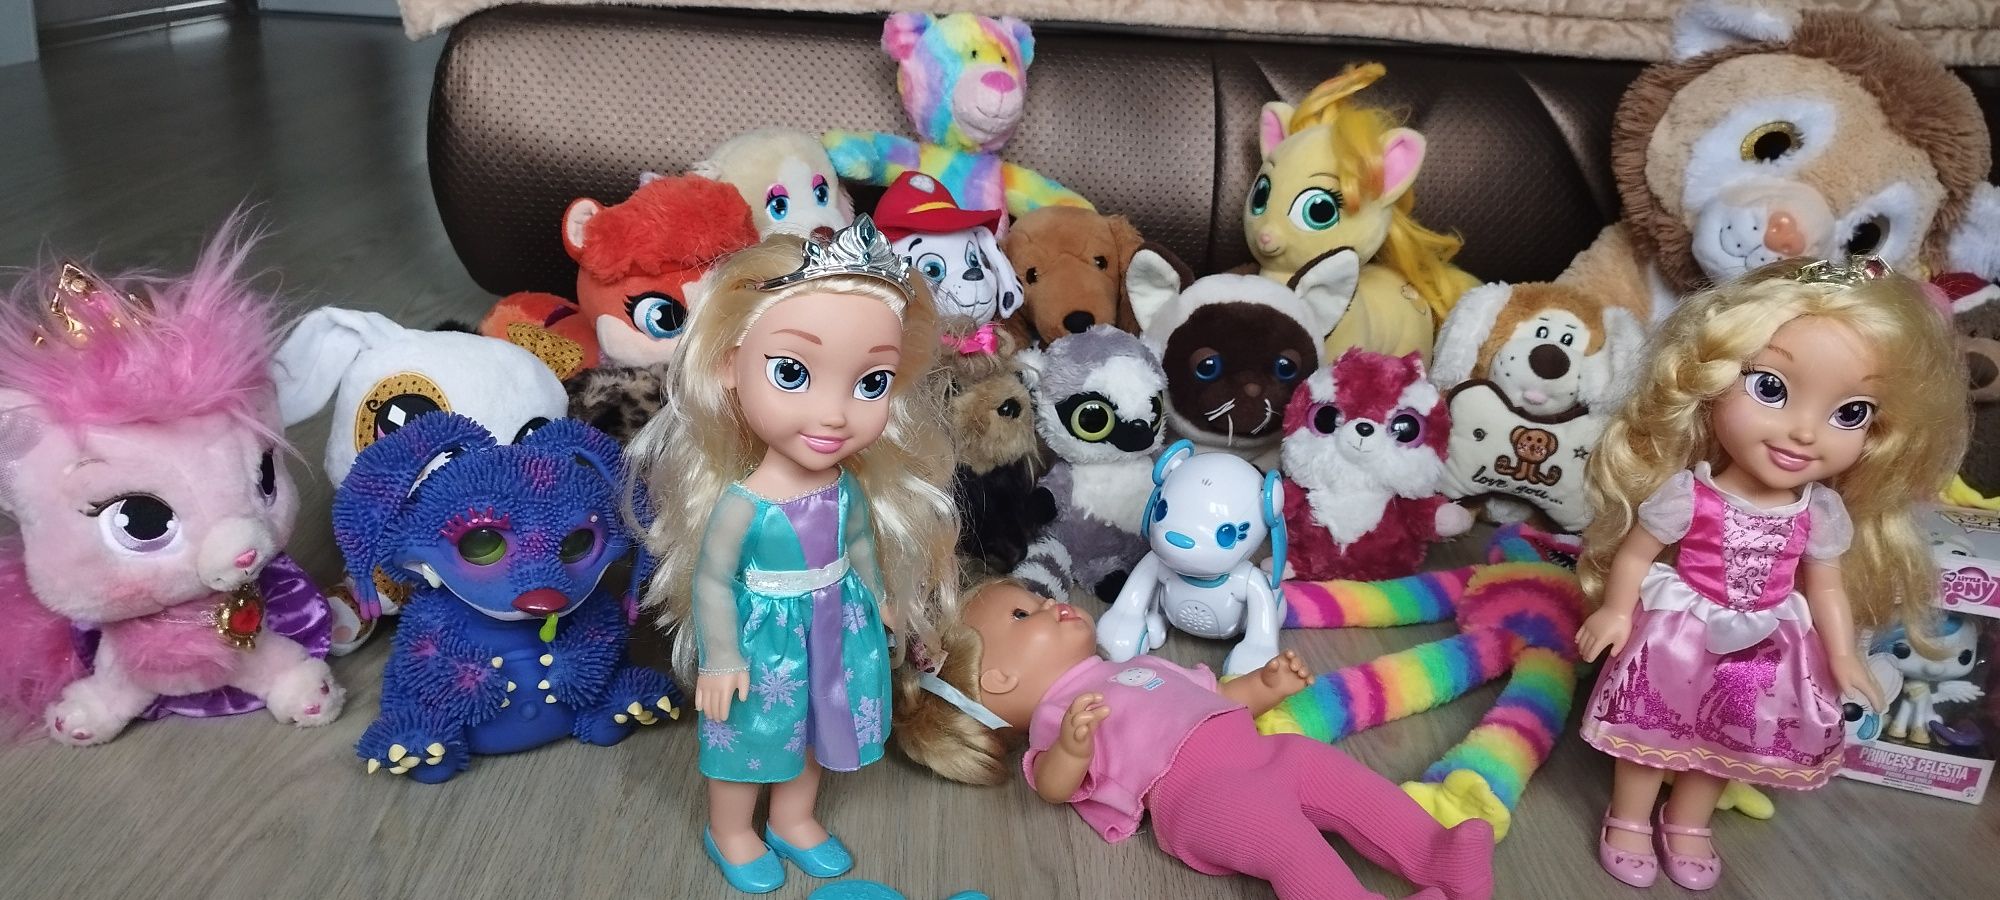 Много разных мягких игрушек,куклы